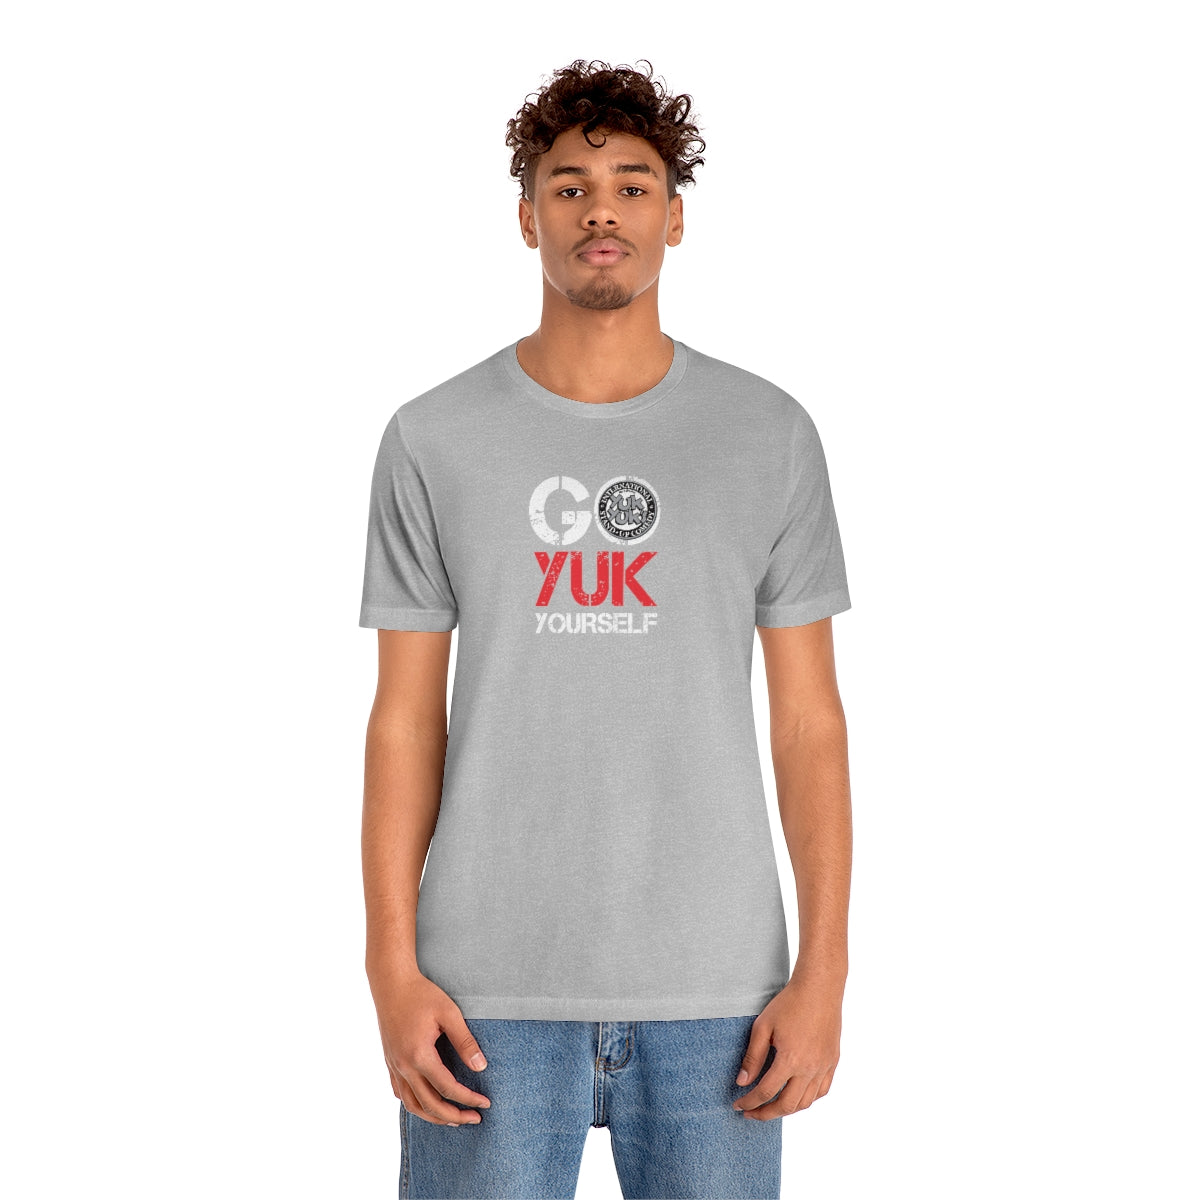 Go Yuk Yourself Dark - Unisex